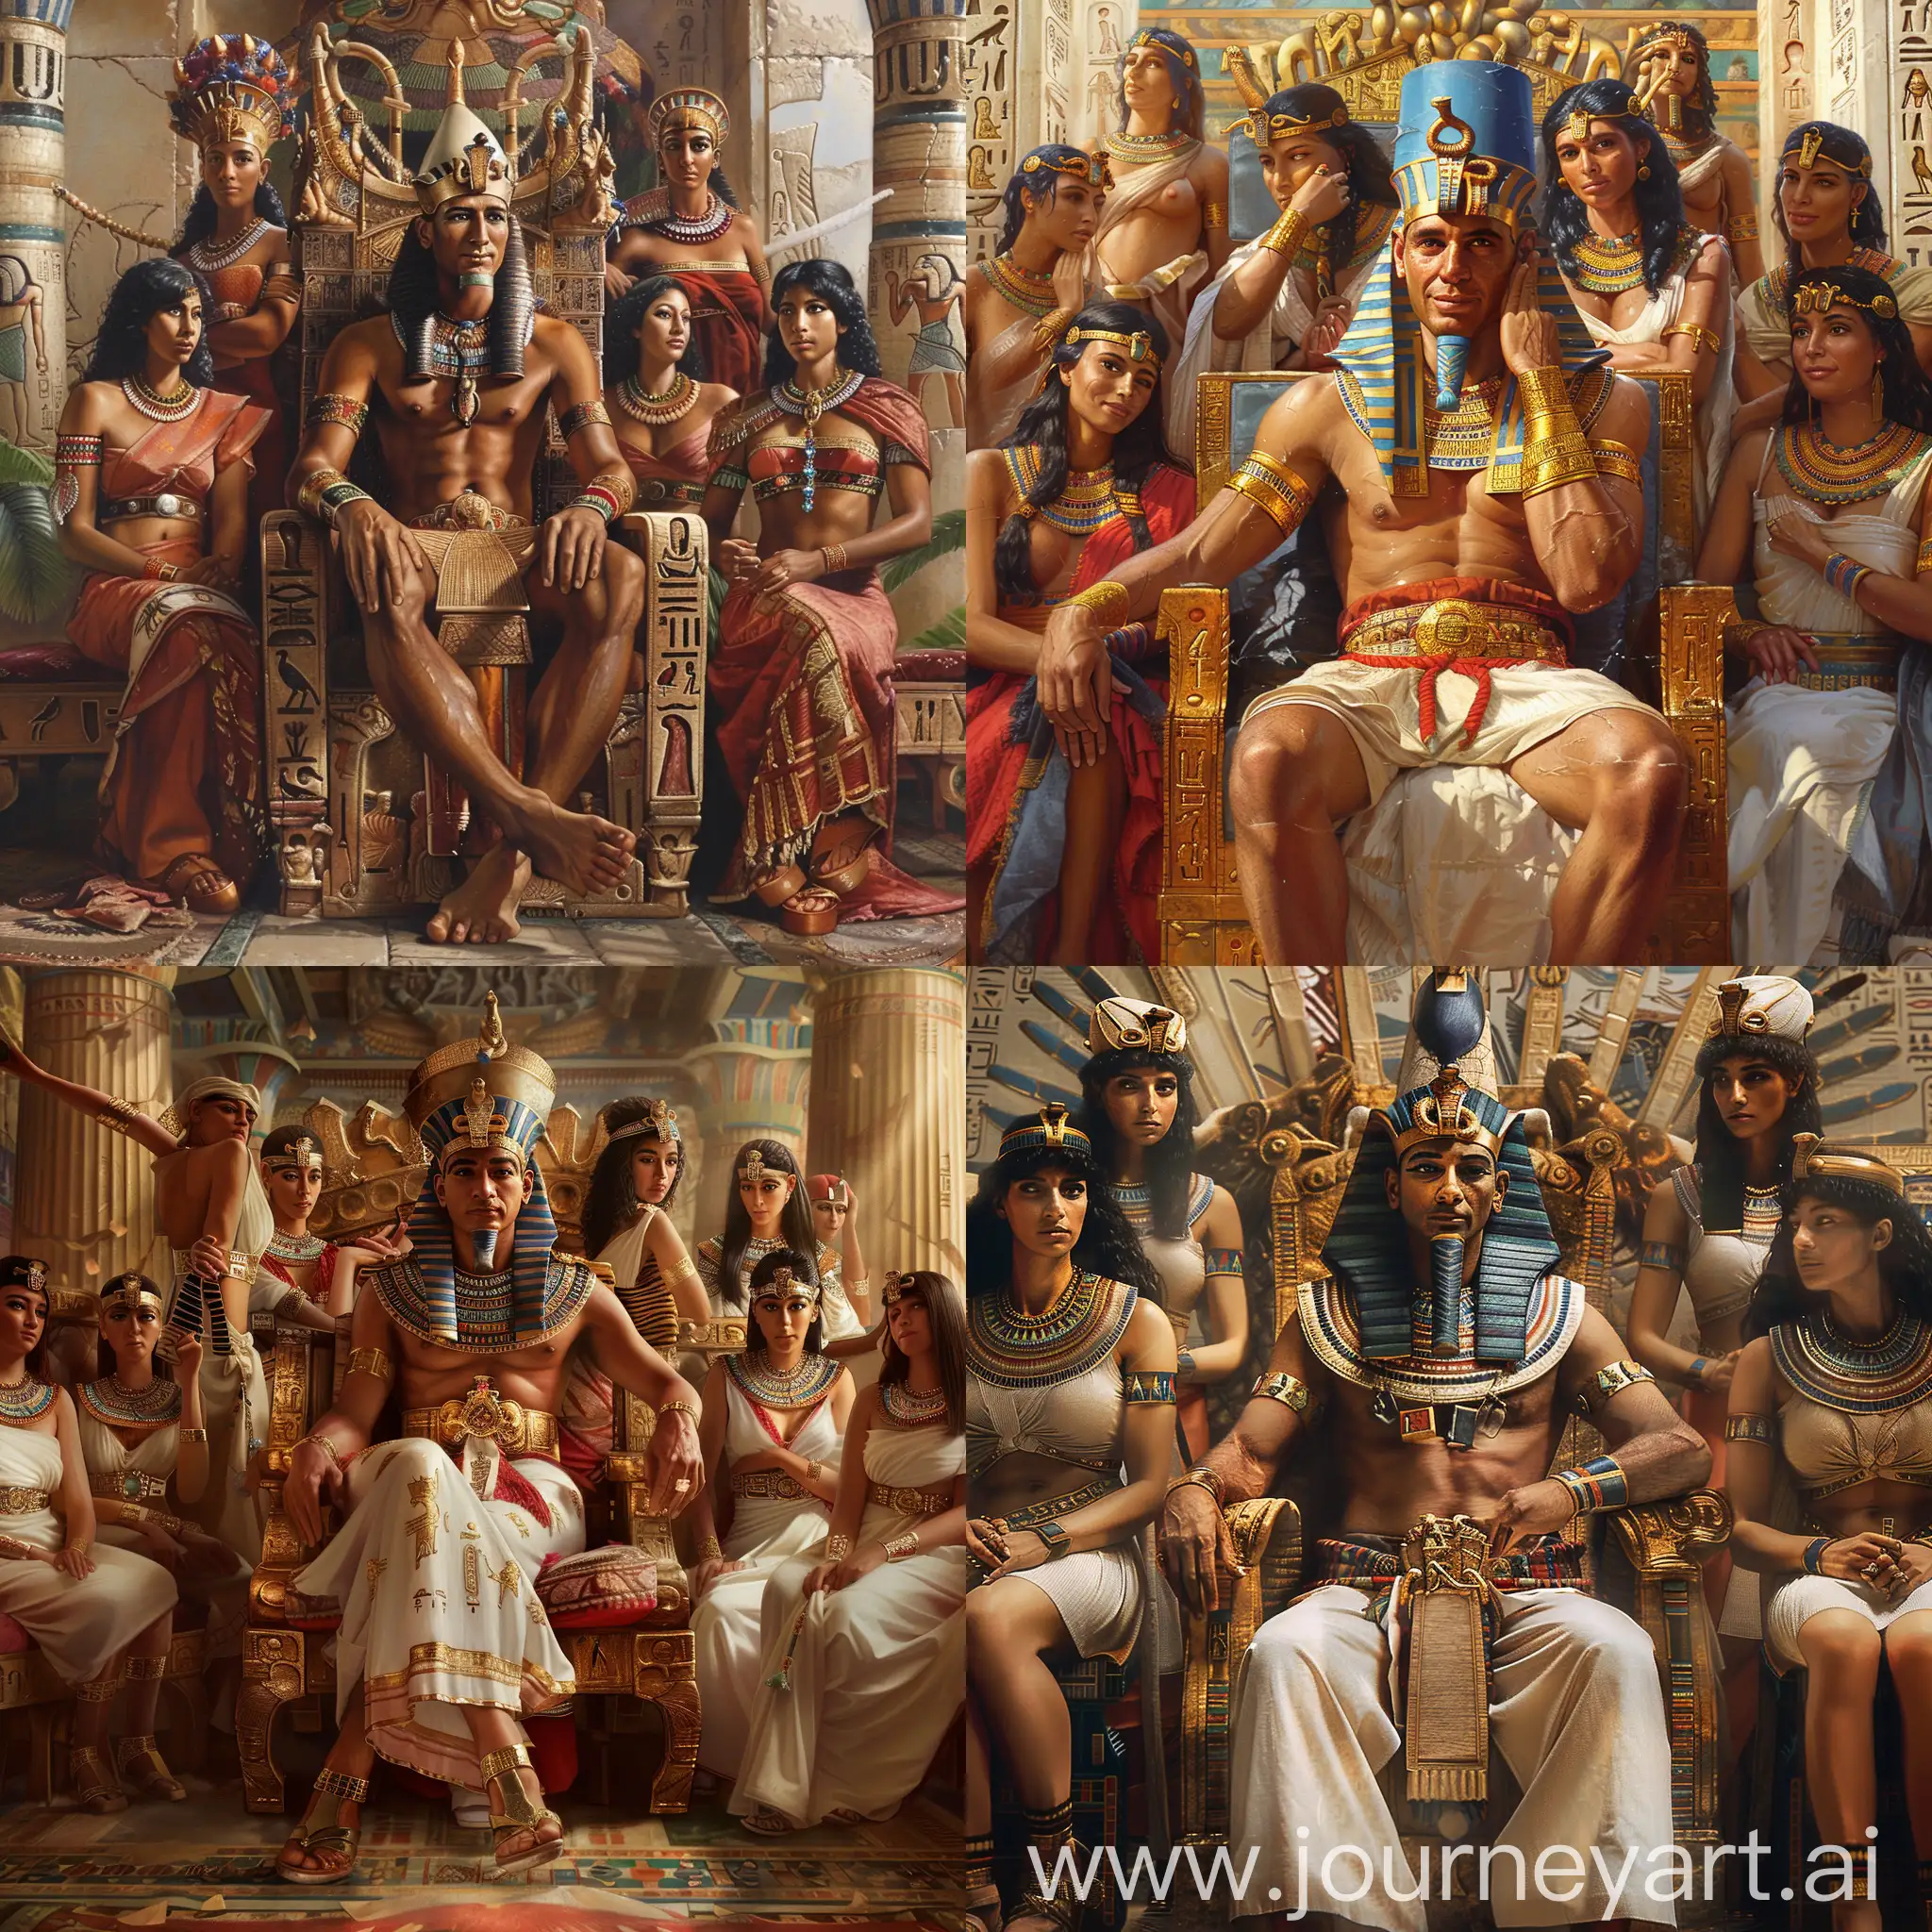 древнеегипетский фараон сидит в тронном зале, его окружают красивые наложницы, фотореализм, гиперреализм